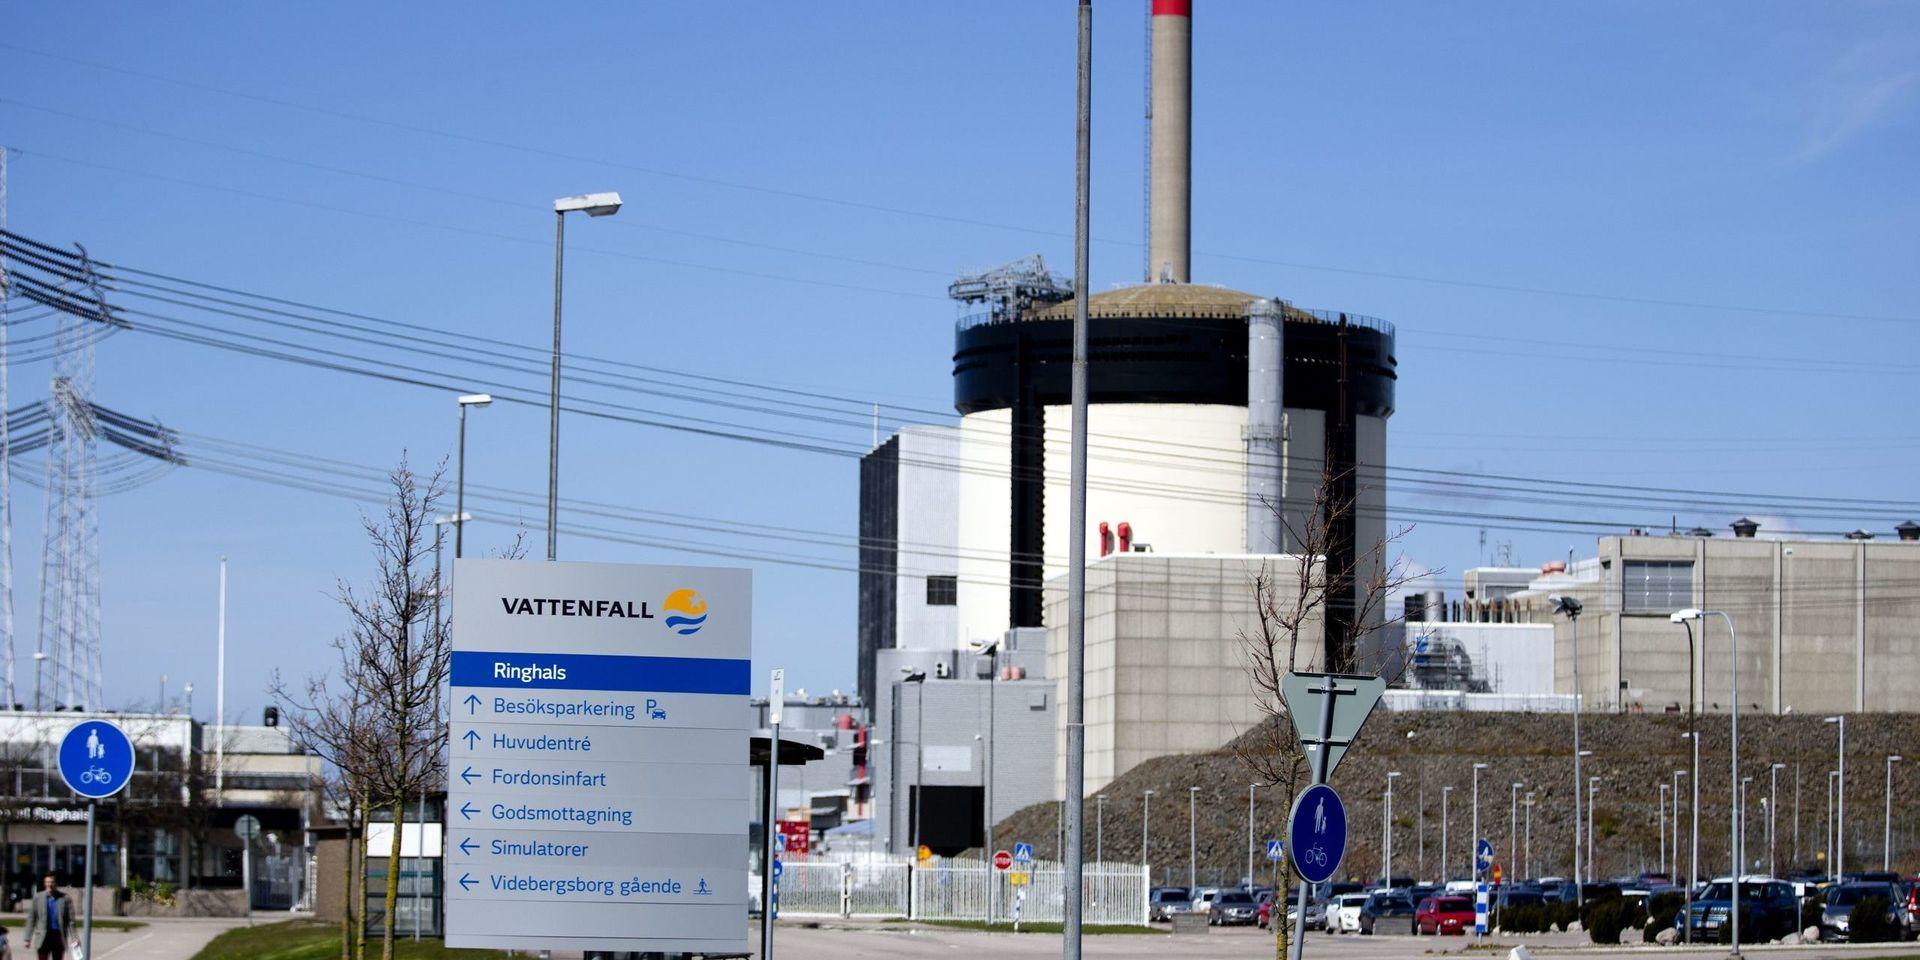 VARBERG 2015-04-28 
Reaktor 1 och 2 på Ringhals kärnkraftverk utanför Varberg där statliga Vattenfall är huvudägare. Vattenfall planerar att stänga kärnreaktorerna Ringhals 1 och 2 redan 2018-2020, inte 2025 som tidigare.
Foto: Adam Ihse / TT / Kod 9200 